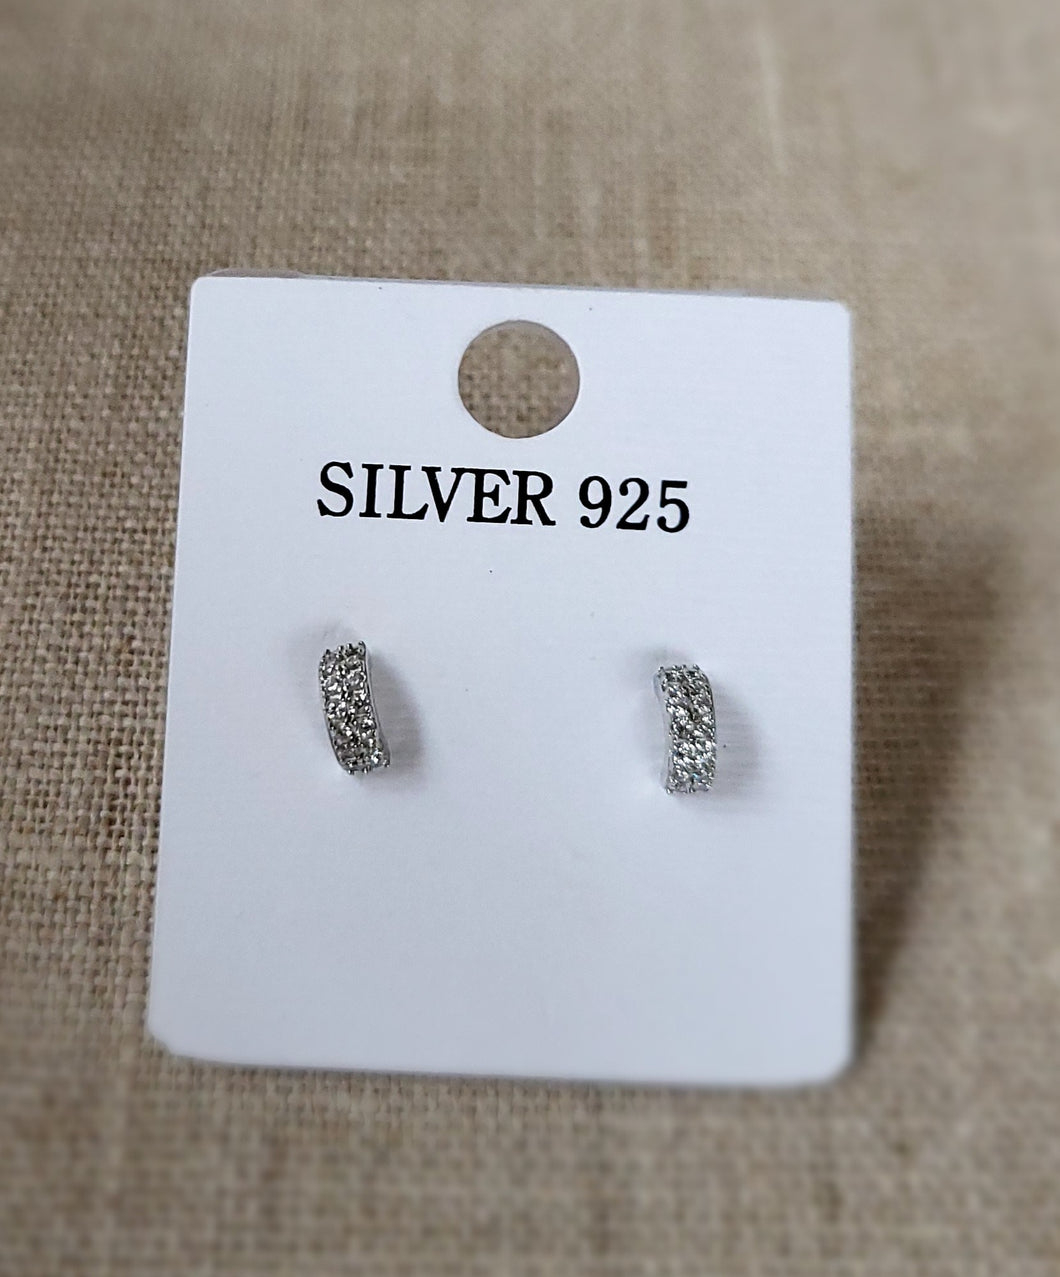 Silver 925 earrings